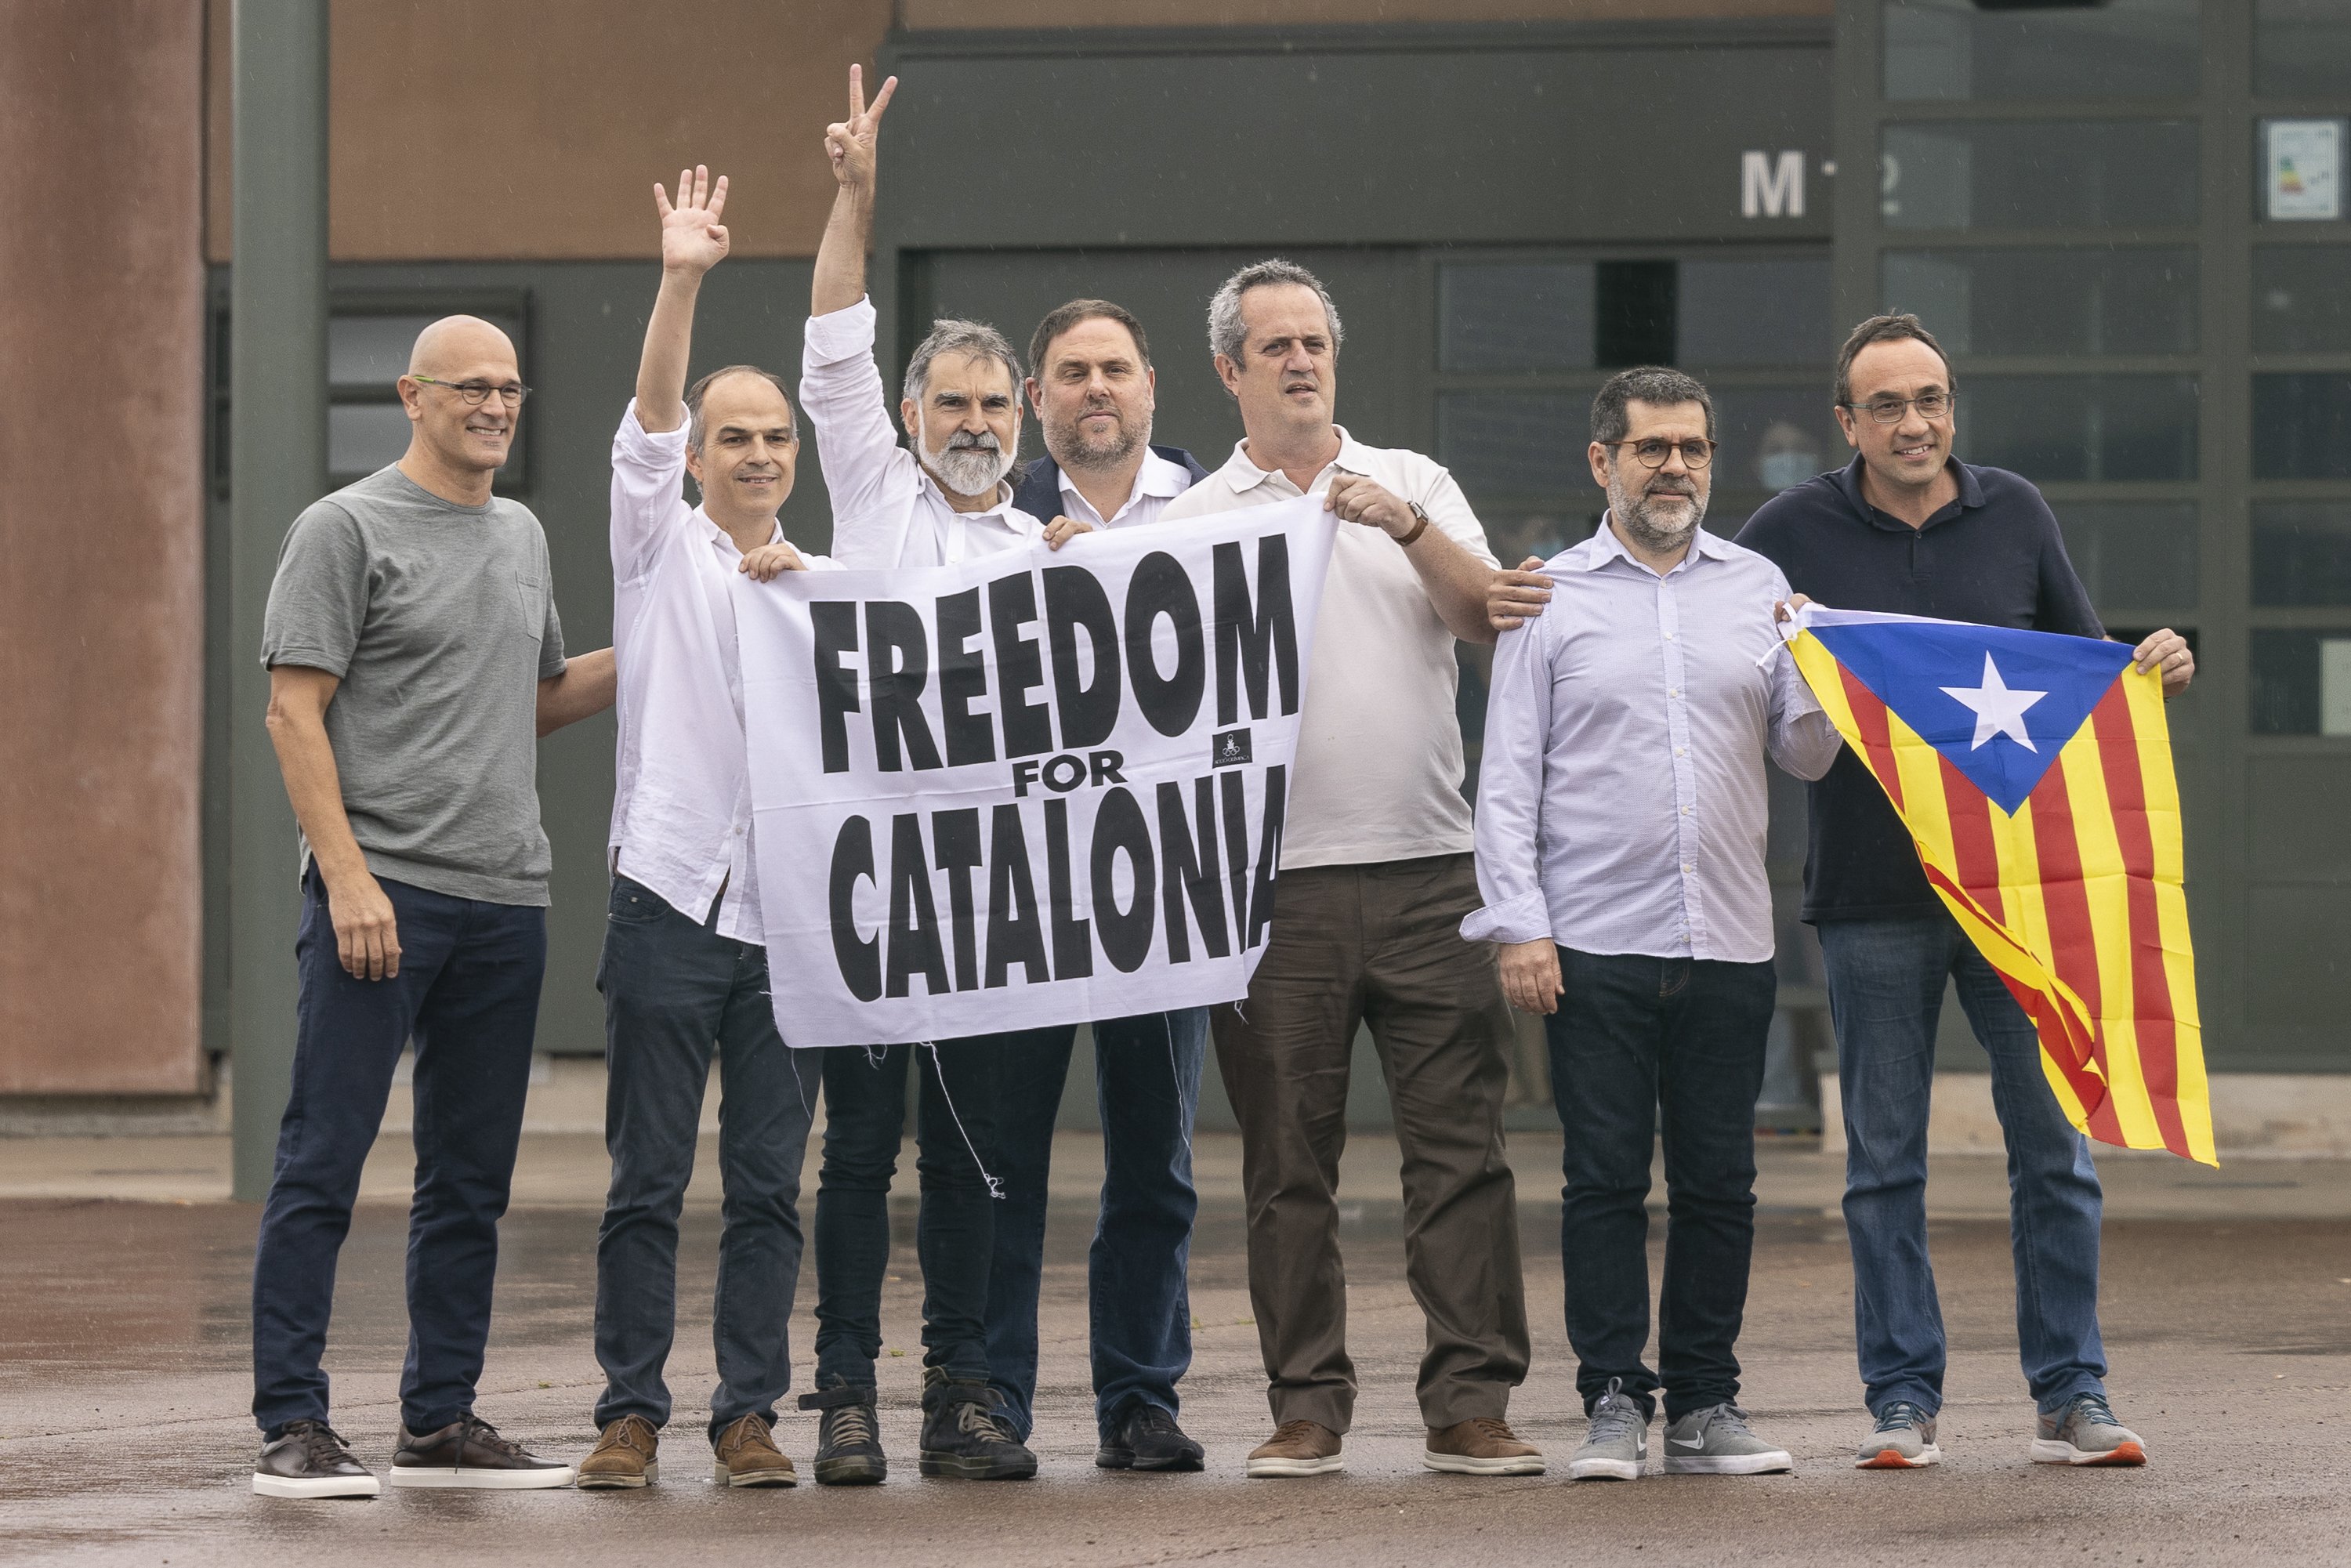 Els presos polítics planten cara amb "convicció" a la revisió dels indults